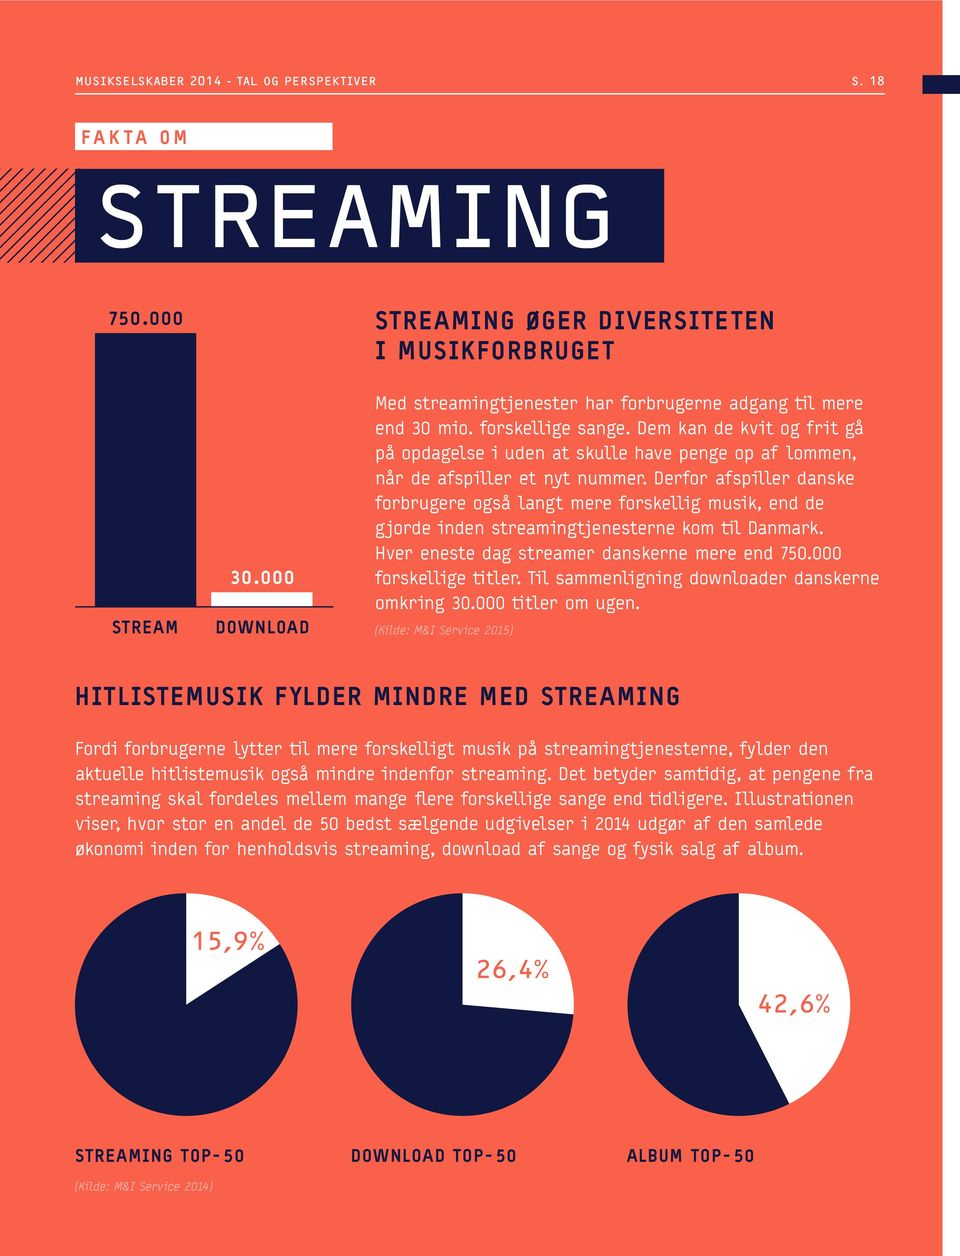 Derfor afspiller danske forbrugere også langt mere forskellig musik, end de gjorde inden streamingtjenesterne kom til Danmark. Hver eneste dag streamer danskerne mere end 750.000 forskellige titler.